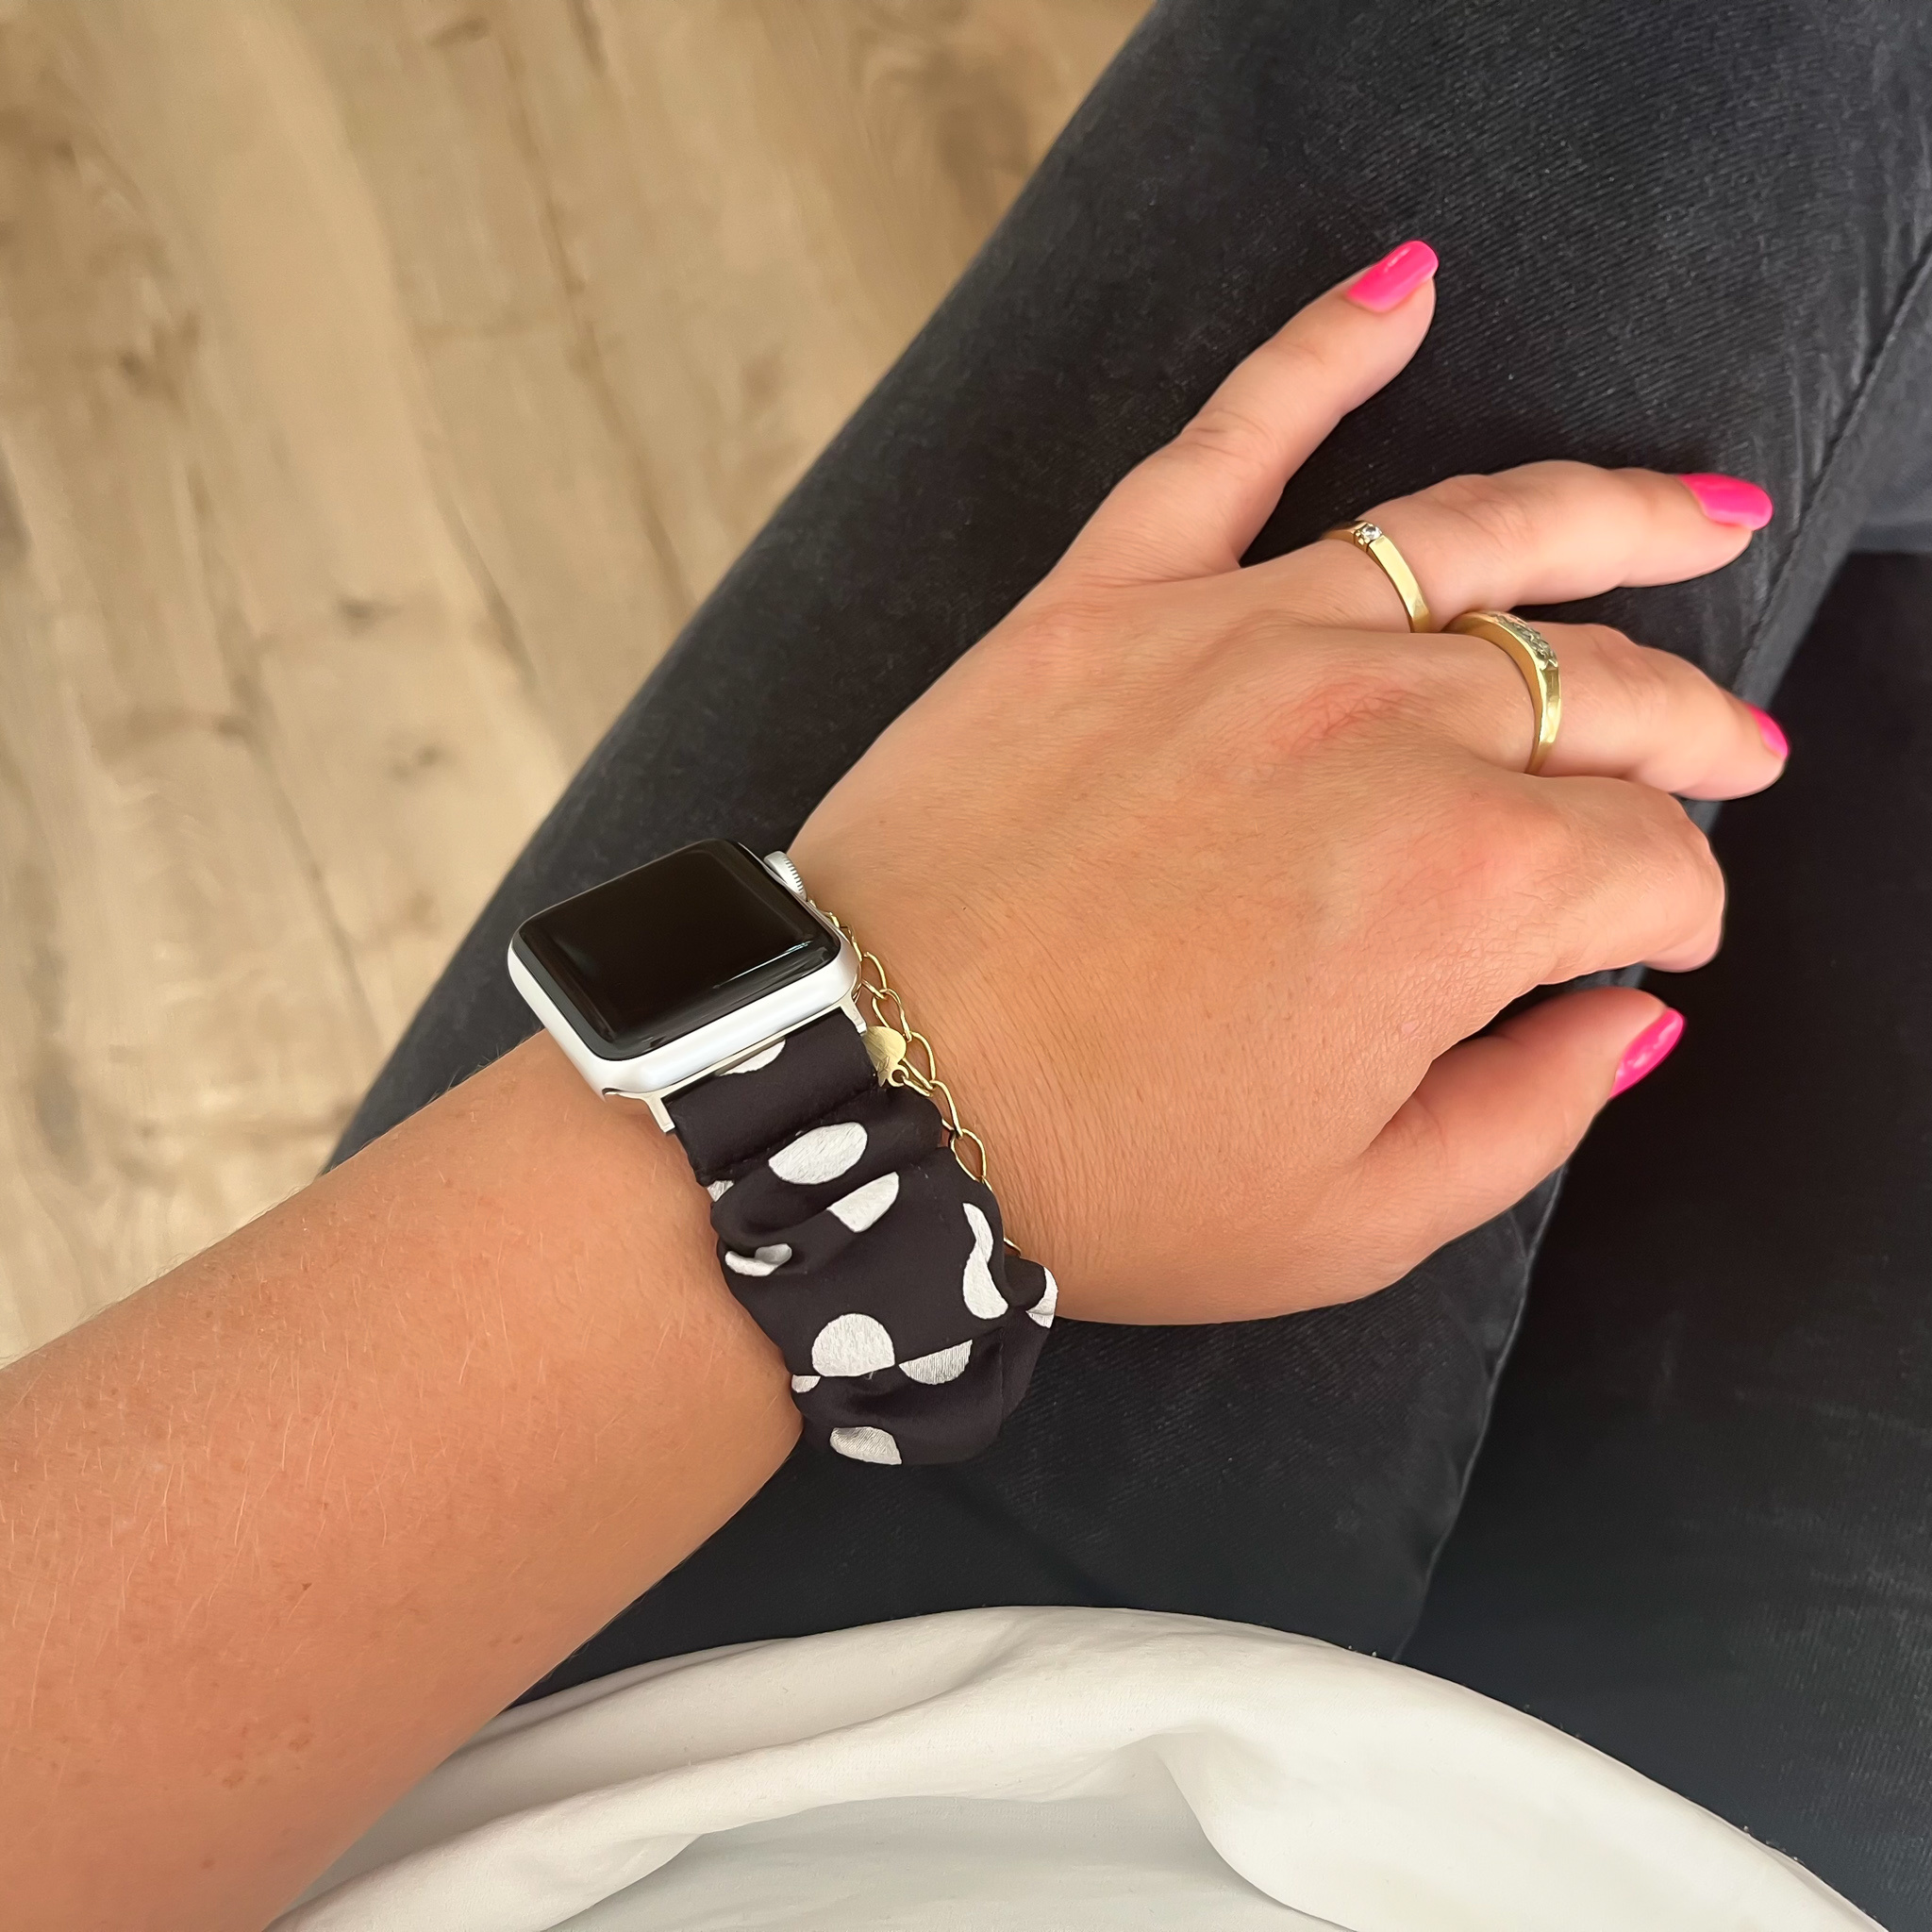 Cinturino elastico in nylon per Apple Watch - nero con pois bianchi